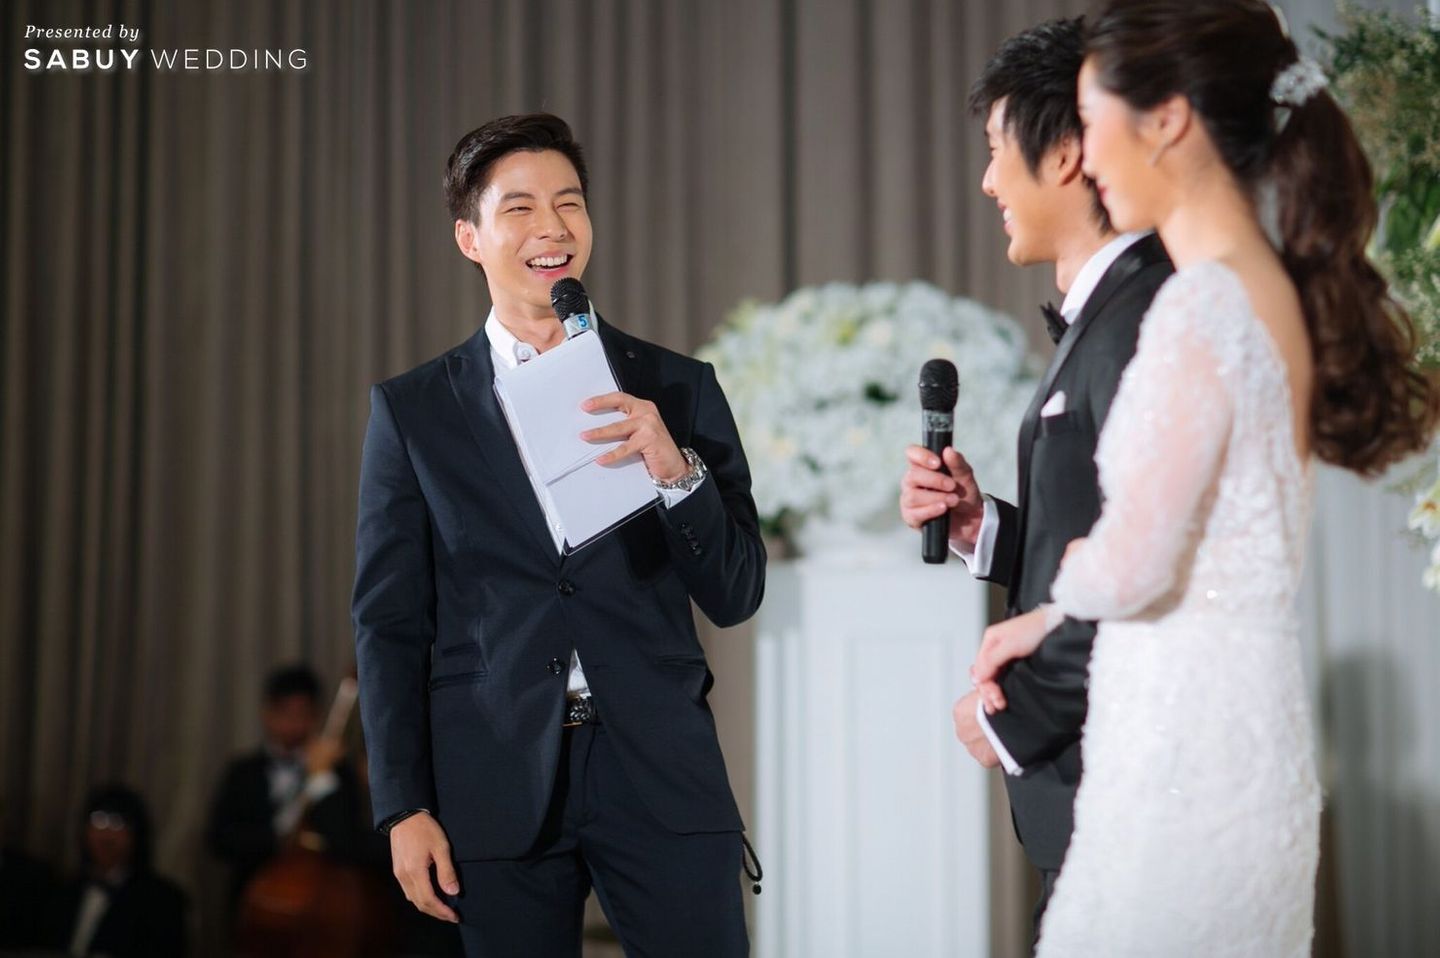 พิธีกรงานแต่ง รีวิวงานแต่งงาน Gen Y ดีไซน์ทุกจุดให้ถ่ายรูปสวยได้ สไตล์แซ่บซี๊ดดดดด @Bangkok Marriott Sukhumvit